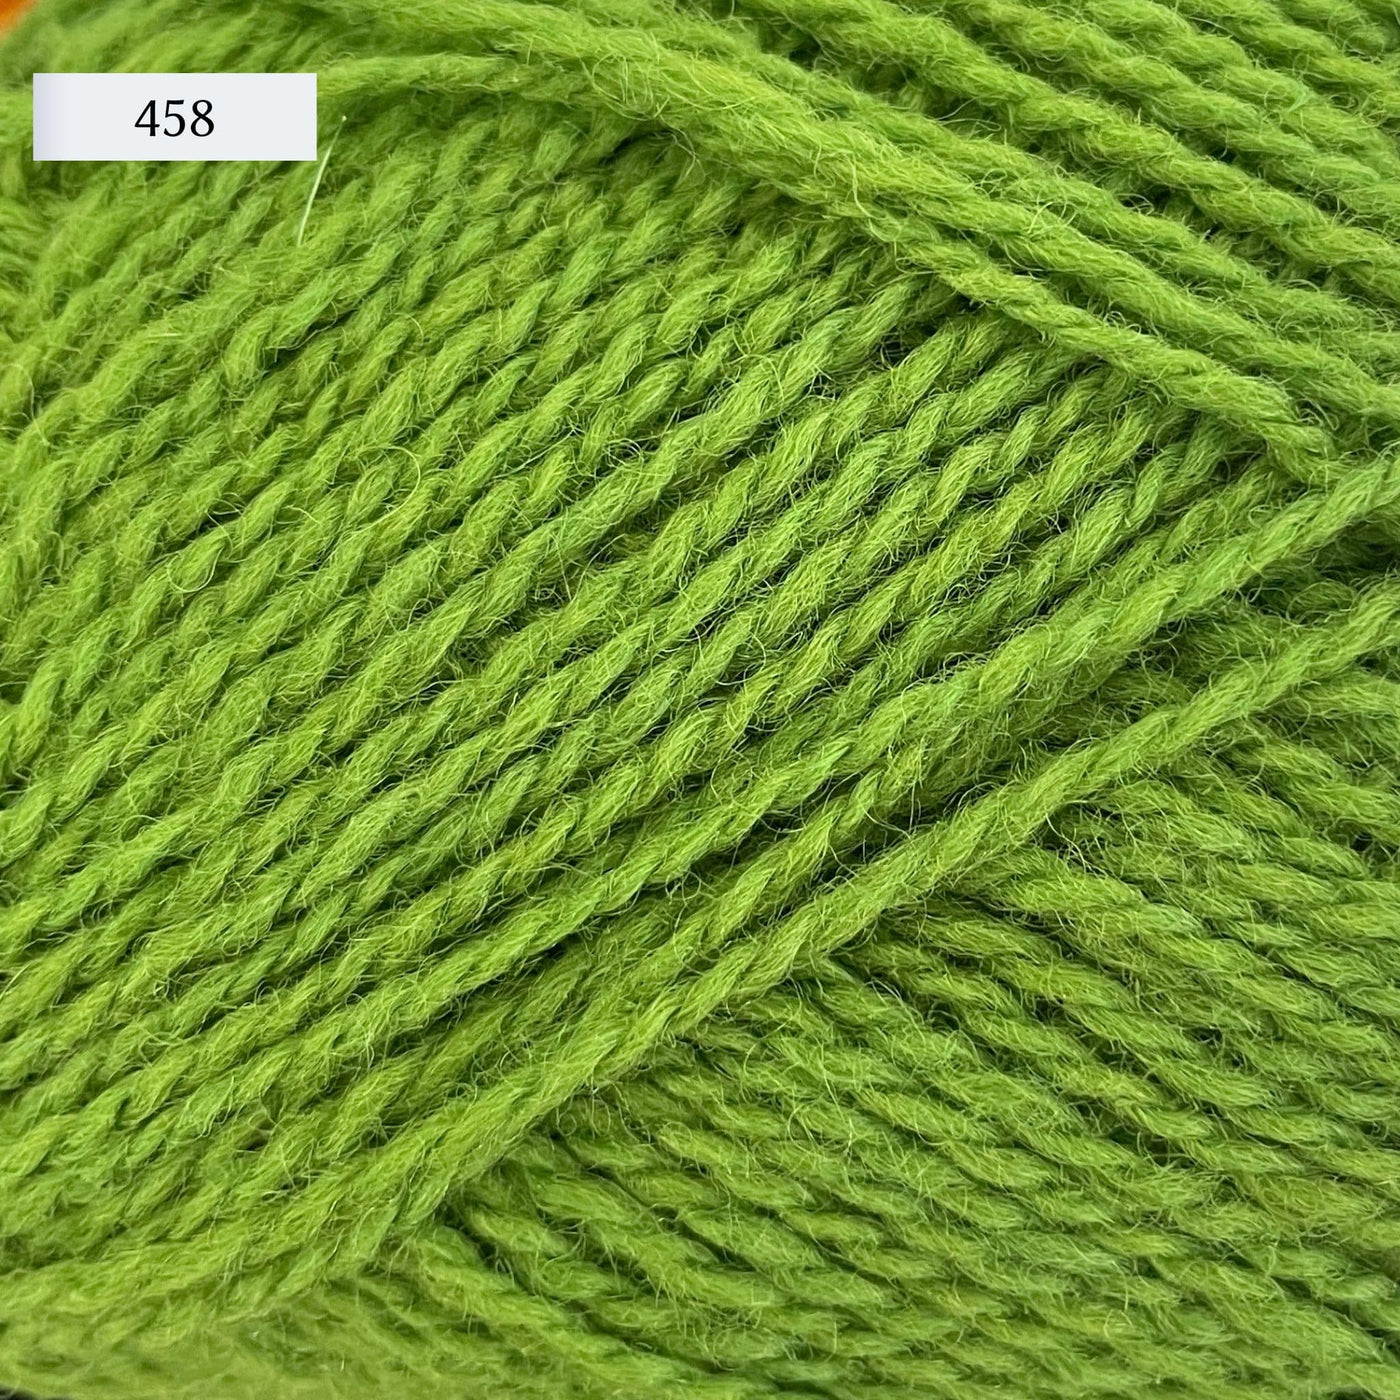 Rauma Finullgarn, a fingering/sport weight yarn, in color 458, a medium green